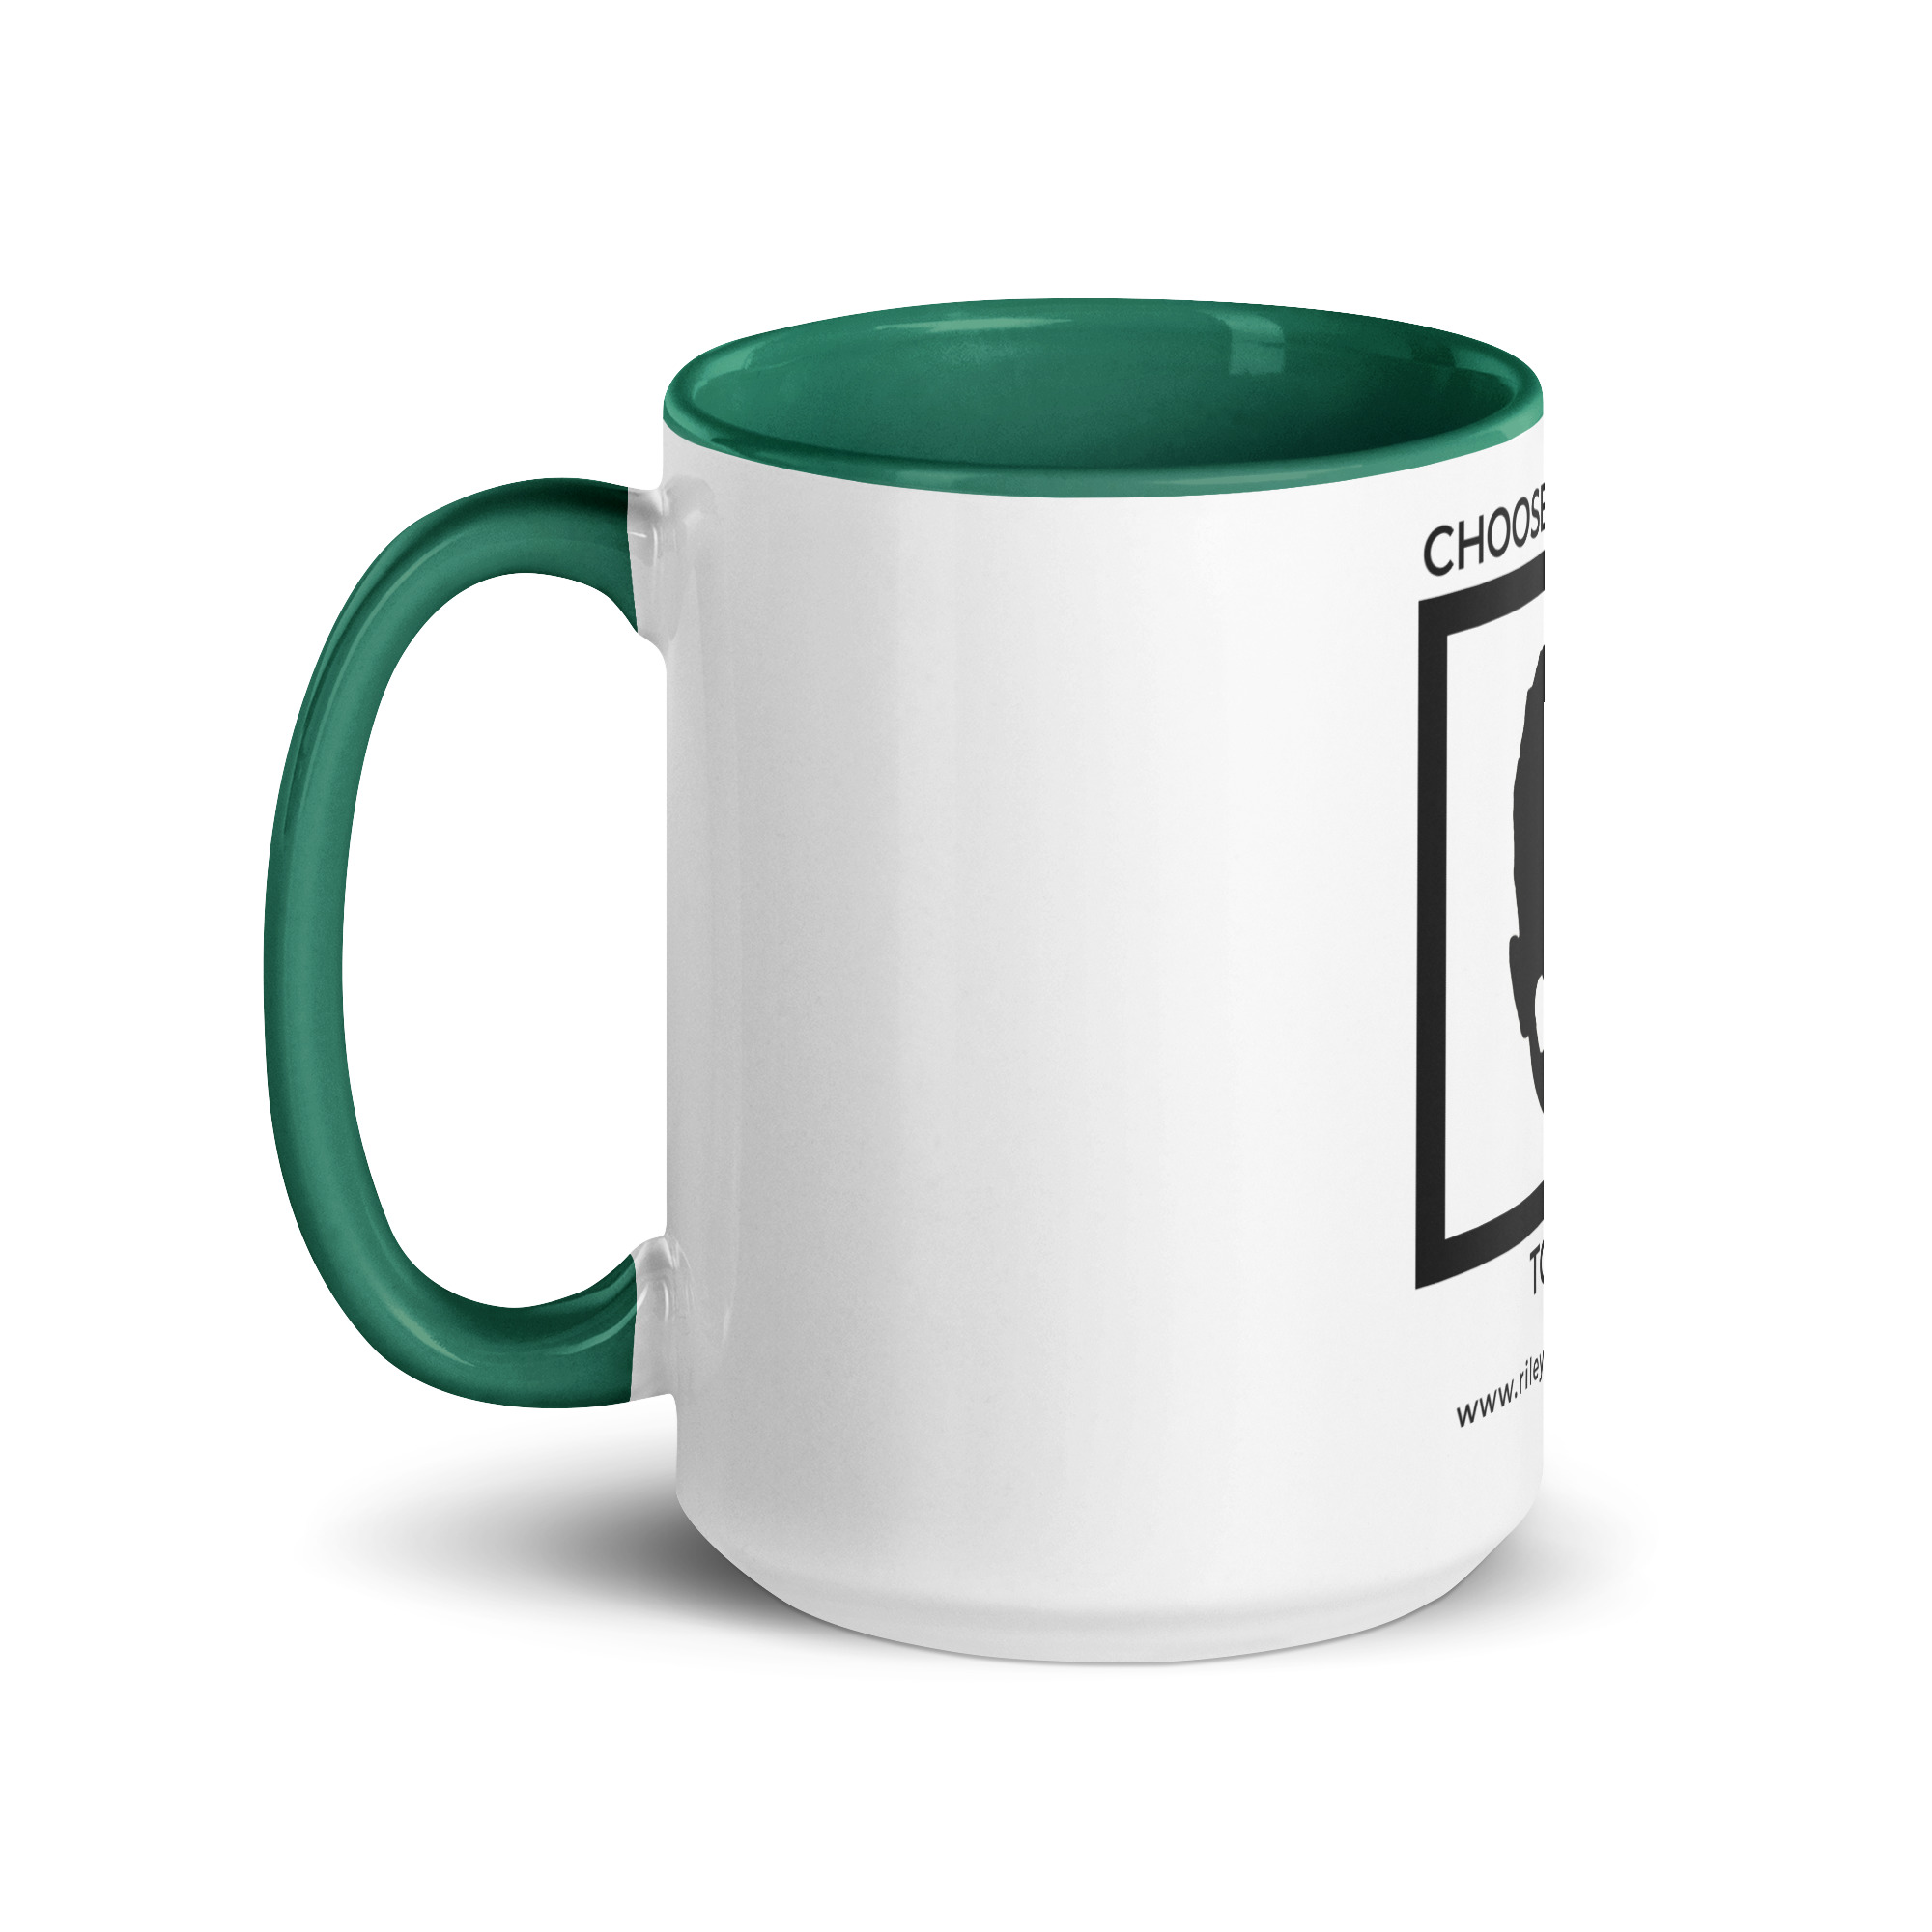 white-ceramic-mug-with-color-inside-dark-green-15-oz-left-6522a1a403f19.jpg